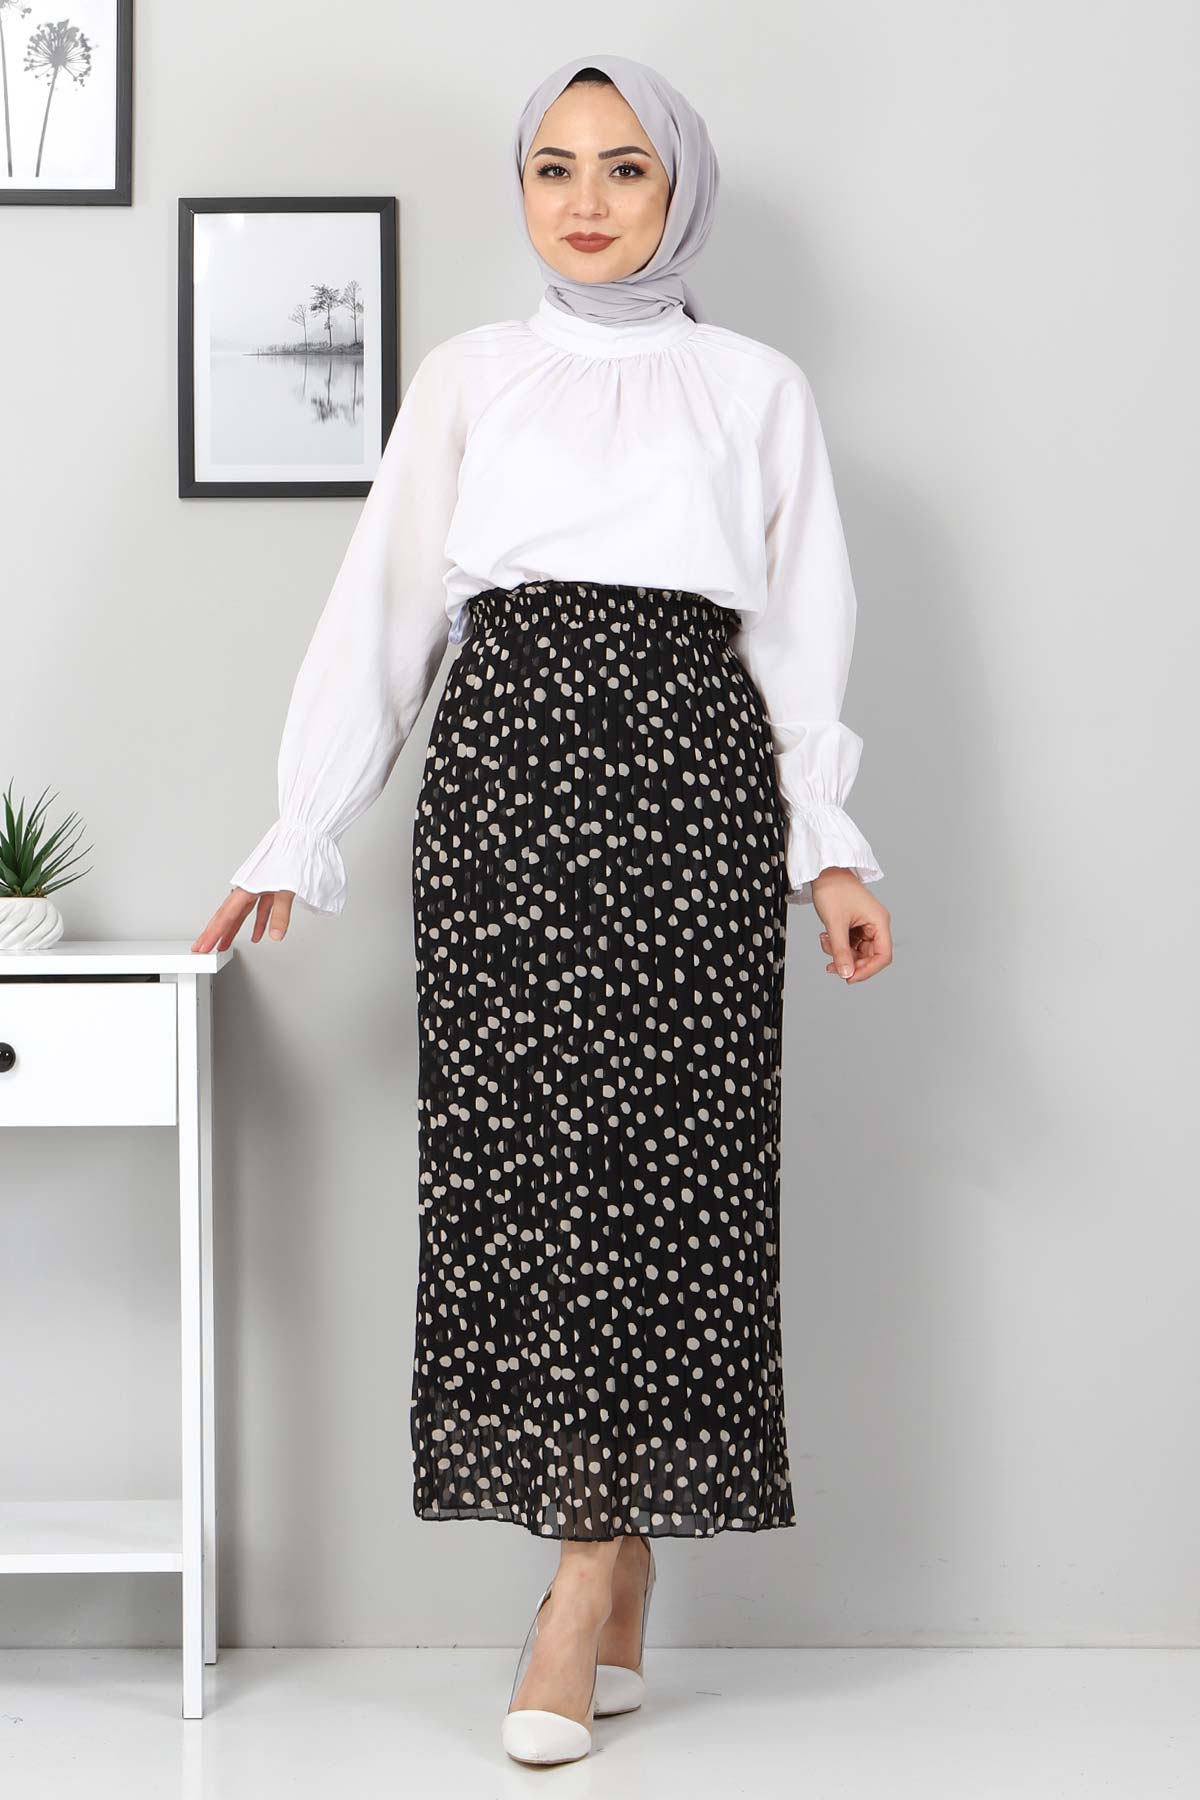 Tesettür Dünyası - Polka Dot Pleated Skirt TSD0031 Black